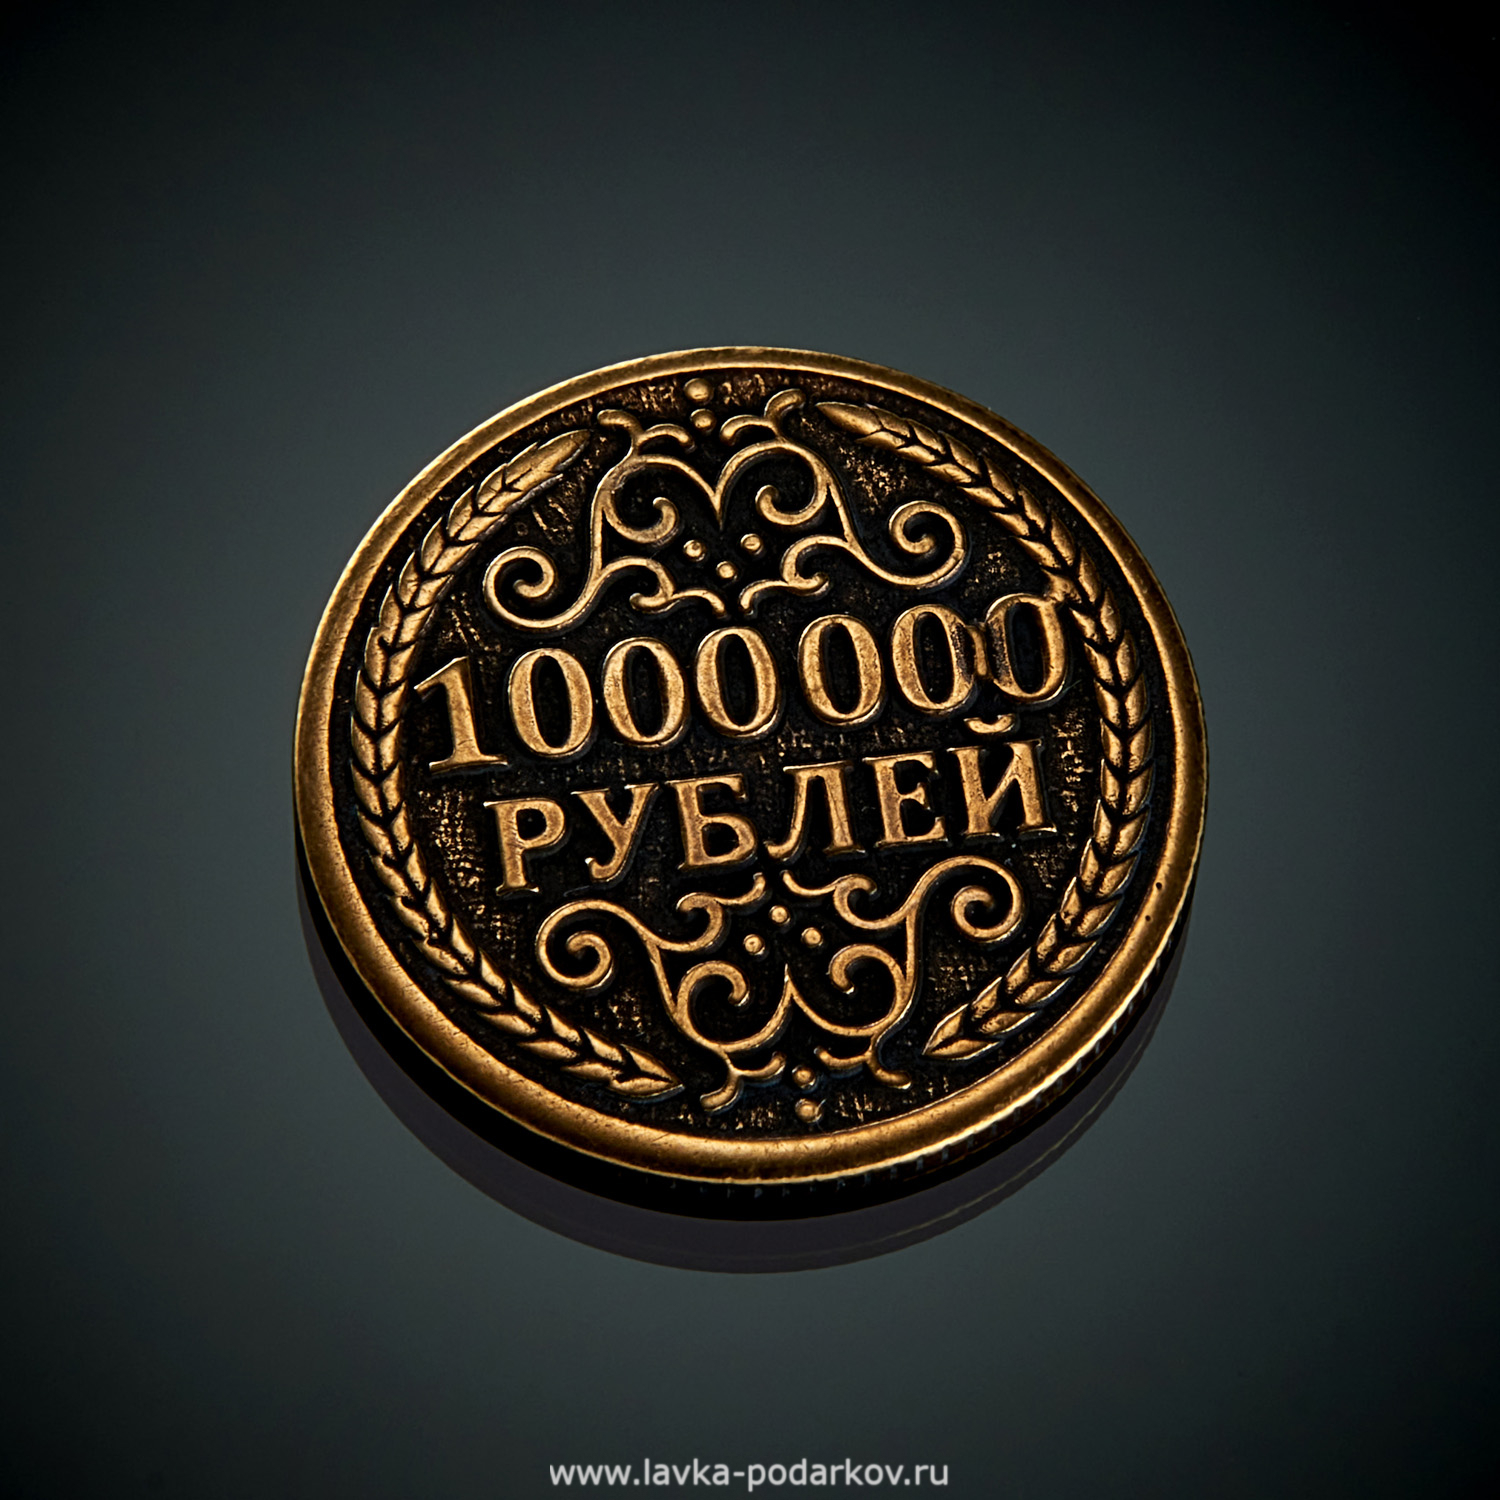 Миллион рублей за третьего. Монета миллион рублей. Сувенирная монета 1000000 рублей. Железная монета 1000000 рублей. Монета 1 000 000 рублей.